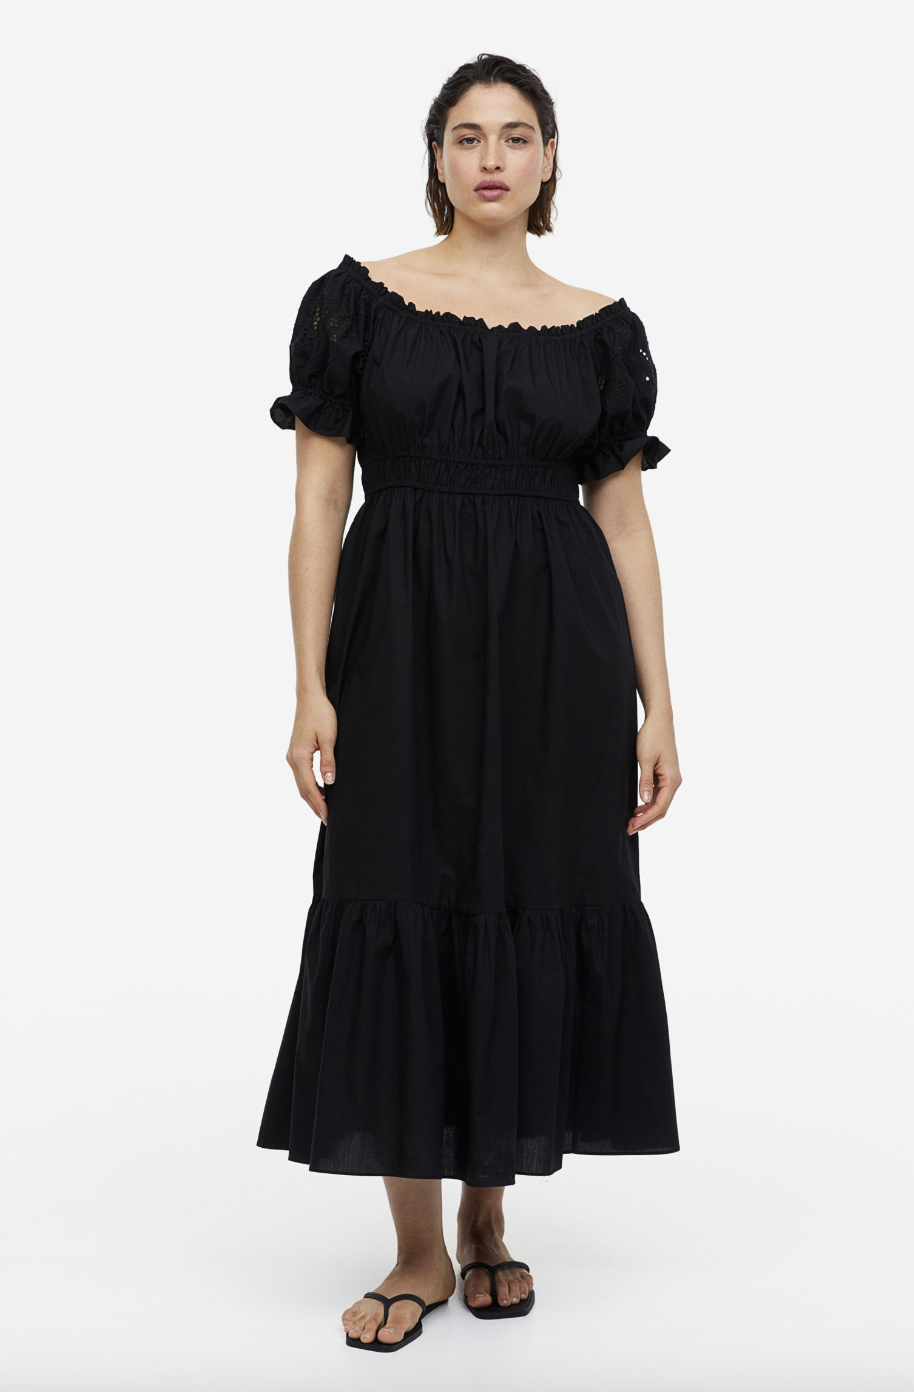 plus size model wearing black Off-the-Shoulder Cotton Dress (photo via H&M)